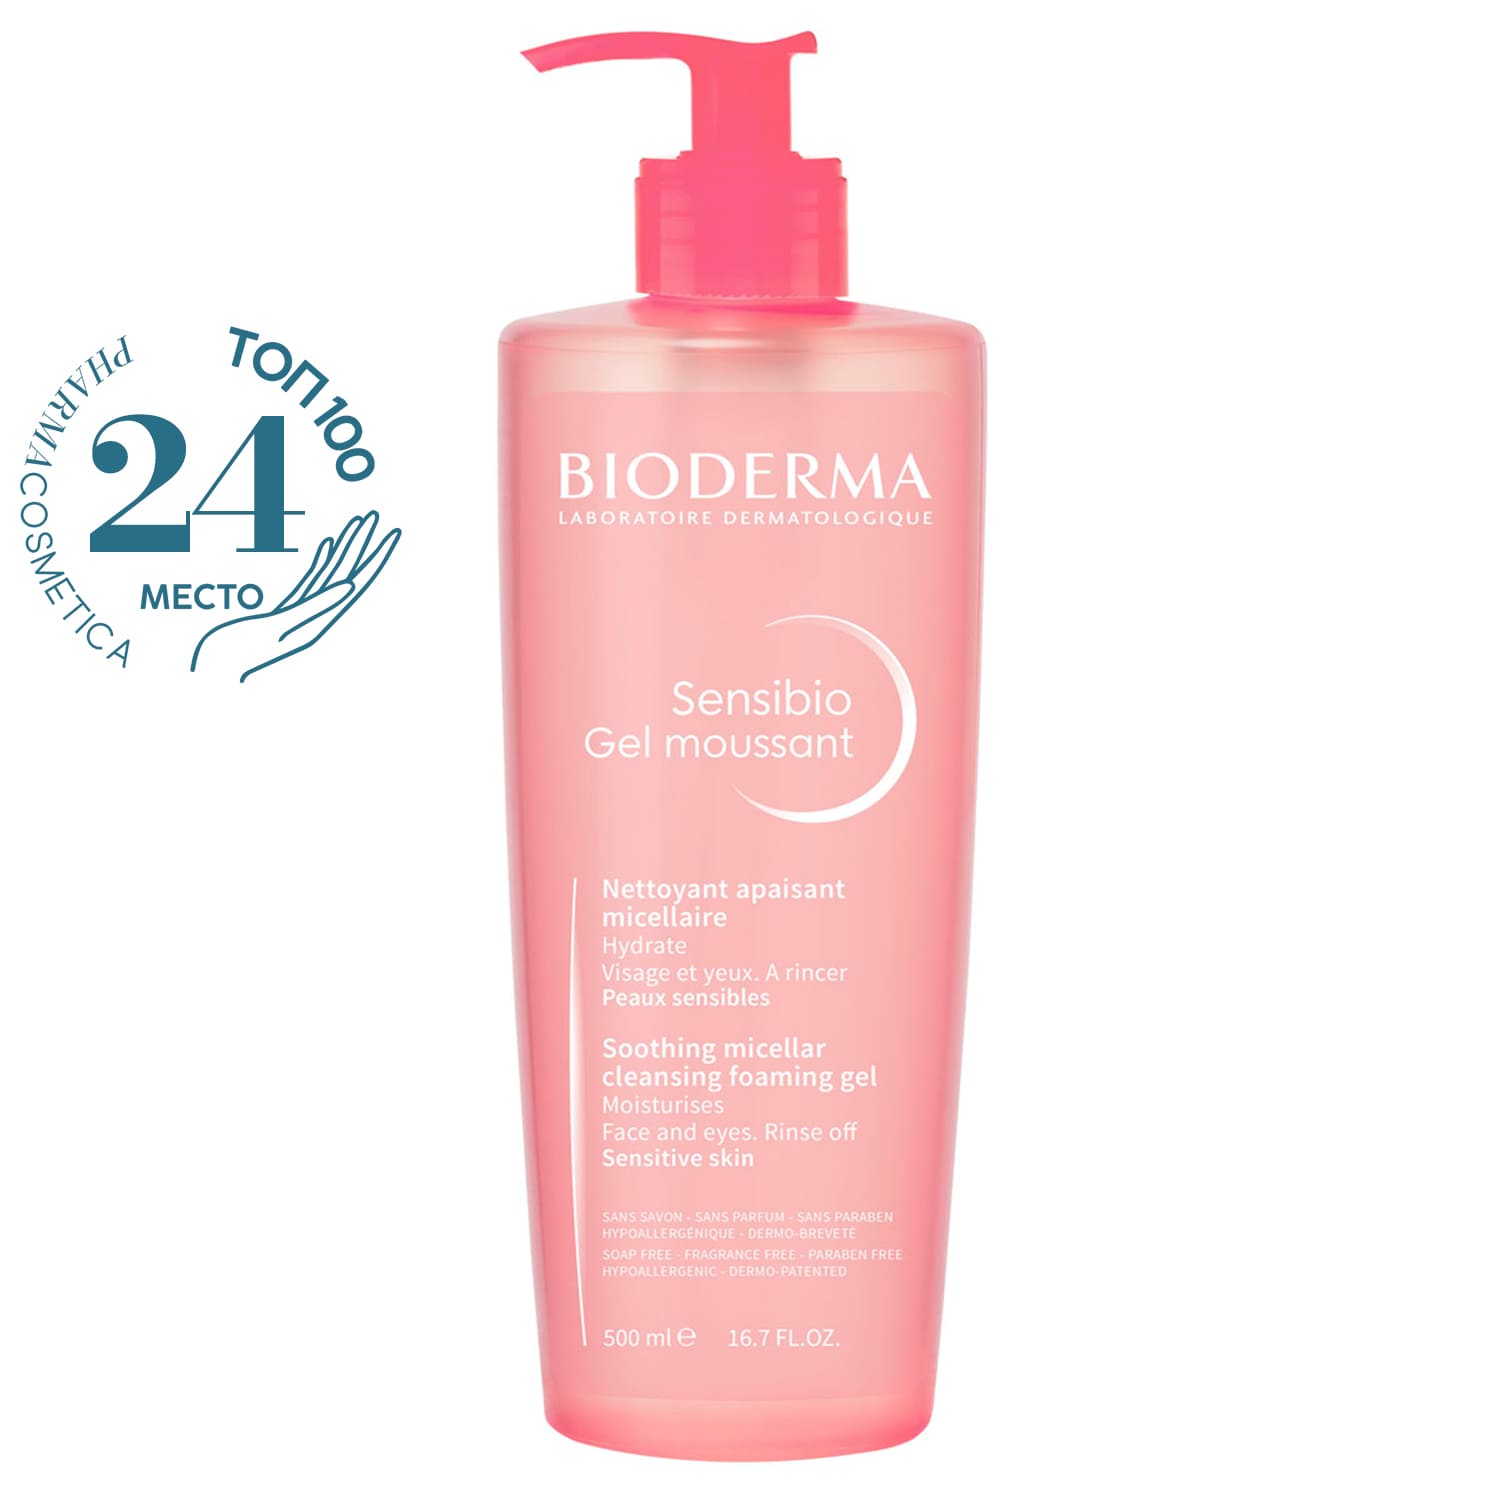 Bioderma Очищающий мицеллярный гель для чувствительной кожи, 500 мл (Bioderma, Sensibio)